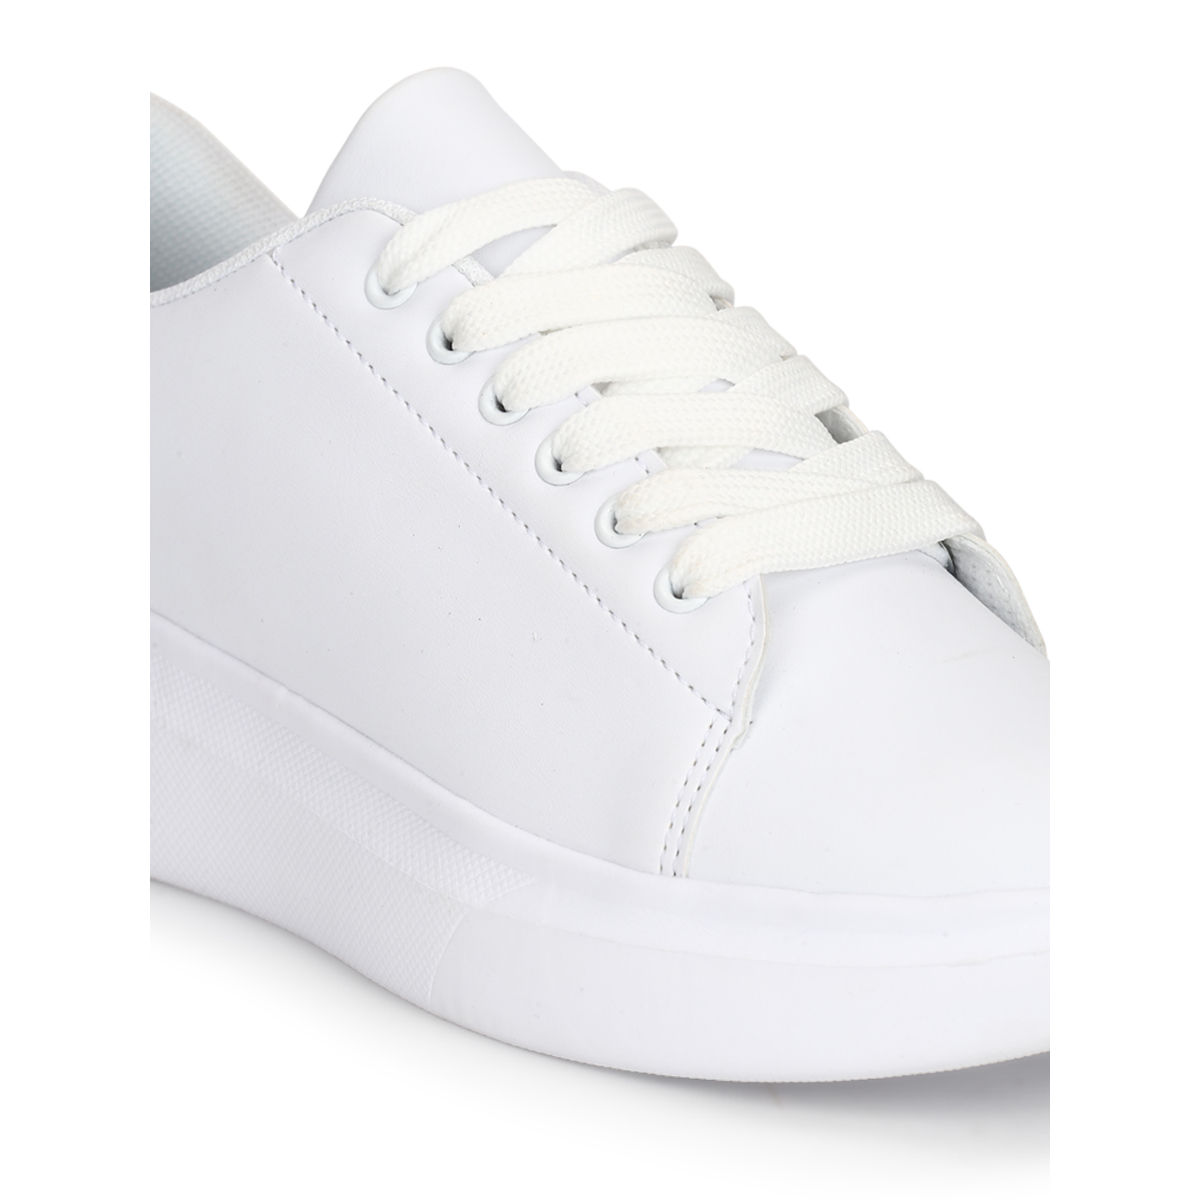 Gigi Hadid Won't Stop Wearing These Platform Sneakers | Platform sneakers  outfit, Platform shoes outfit, White sneakers outfit